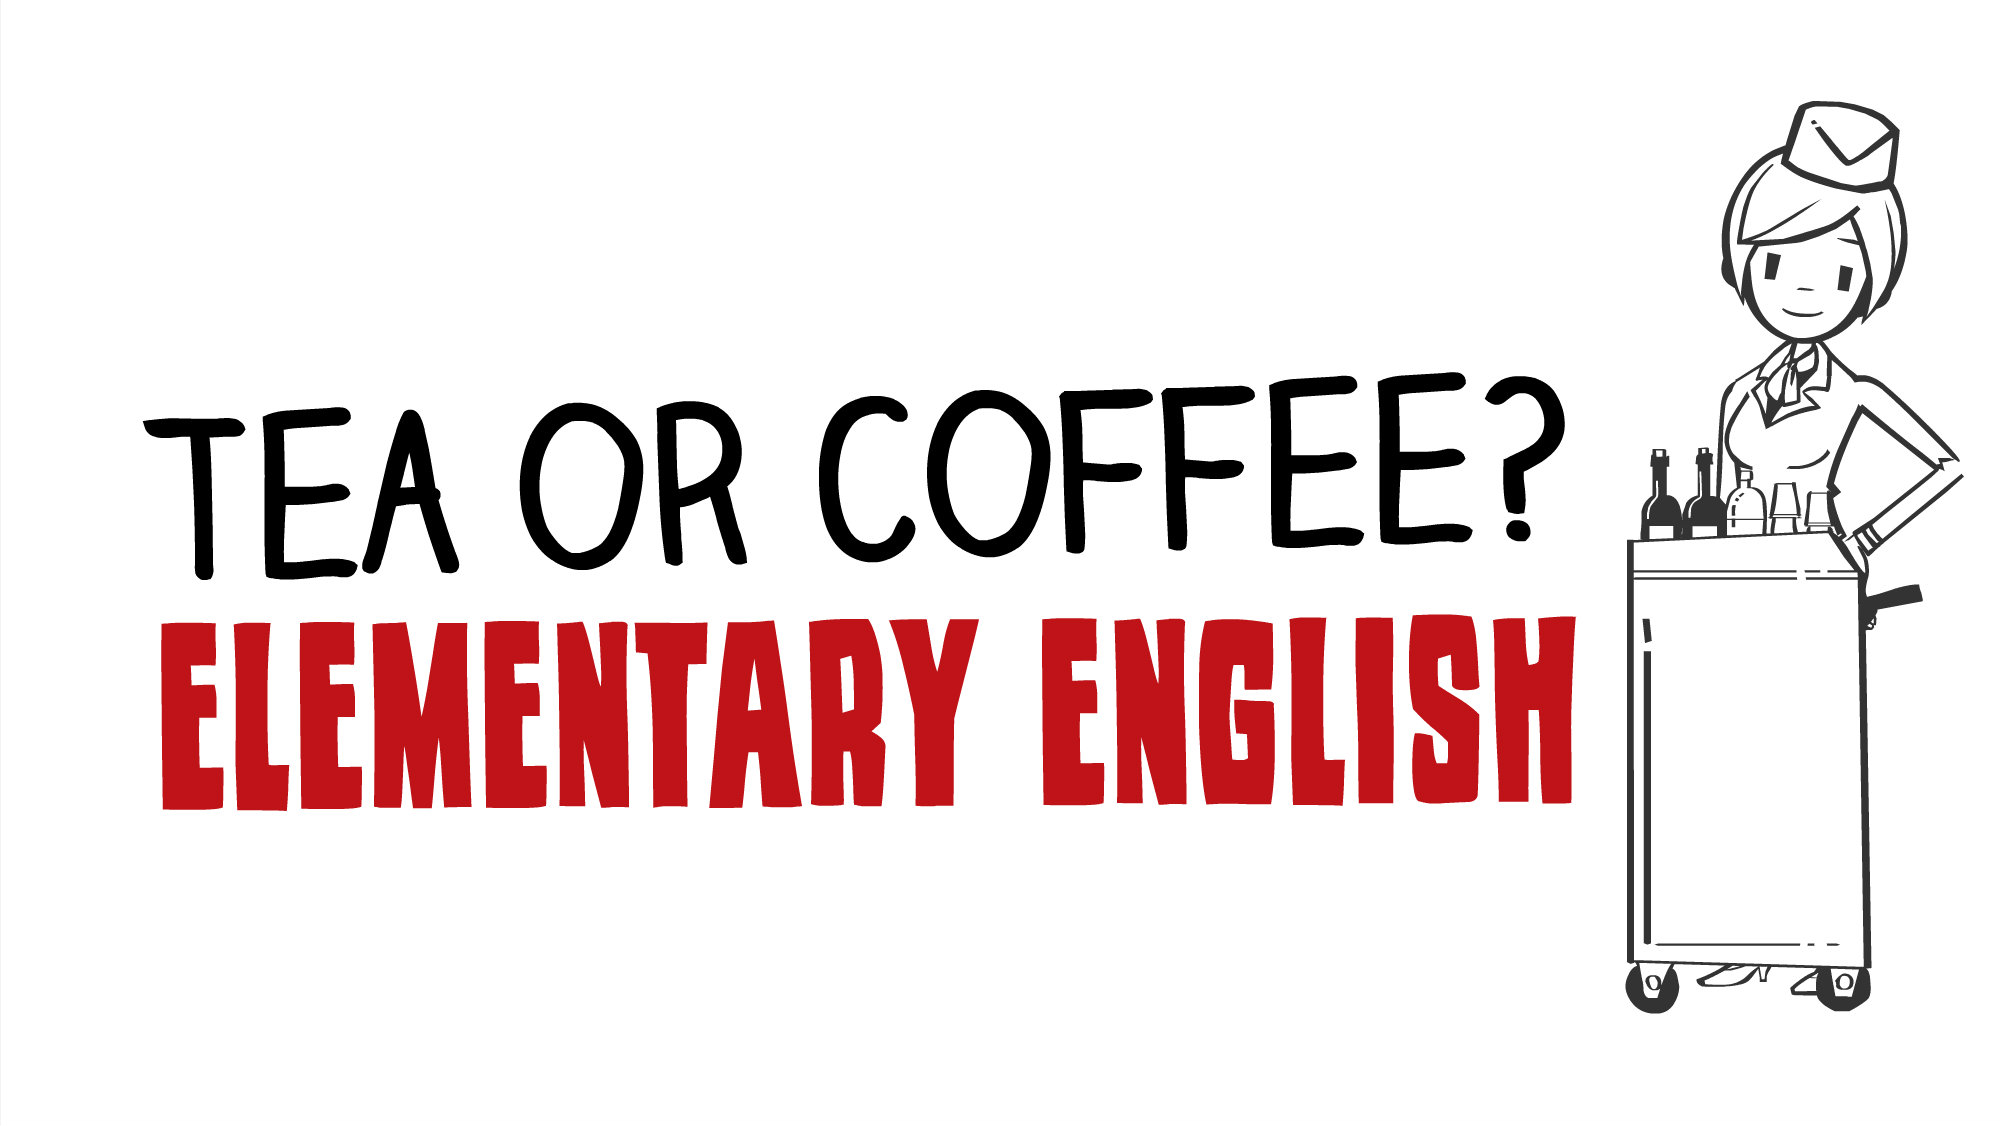 Вам чай или кофе? - обучение английскому языку онлайн